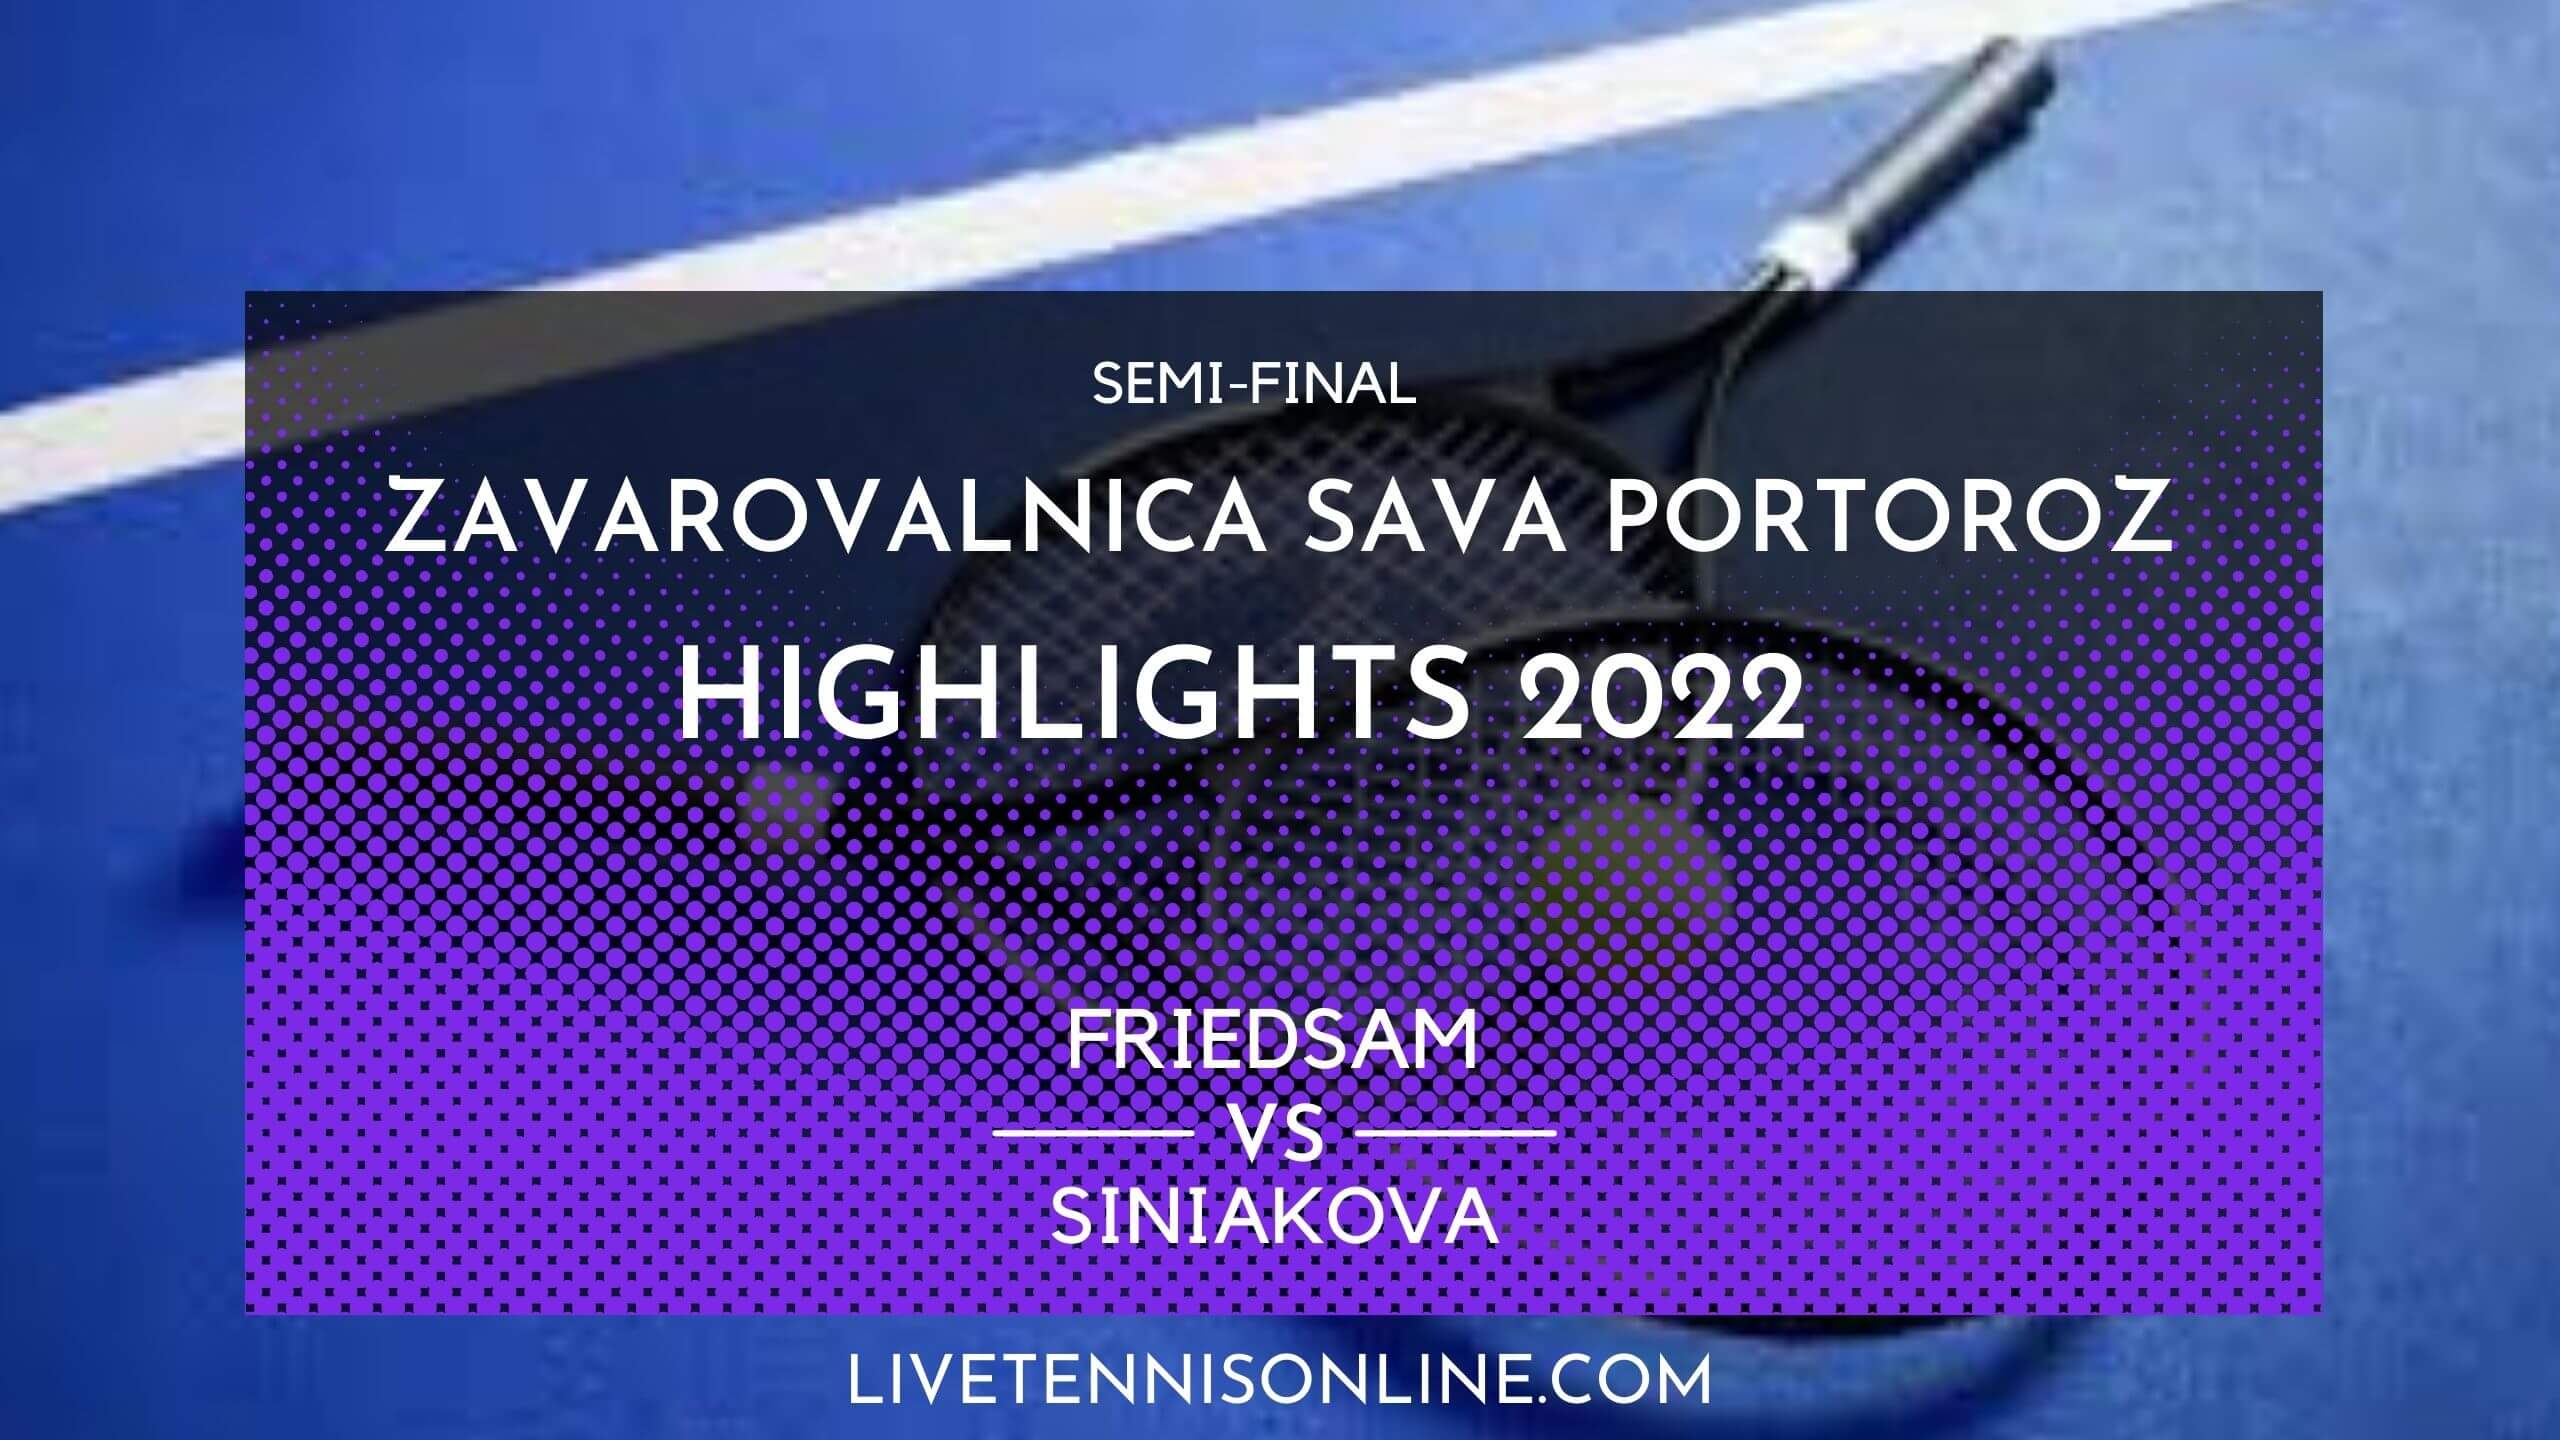 Friedsam Vs Siniakova SF Highlights 2022 Slovenia Open